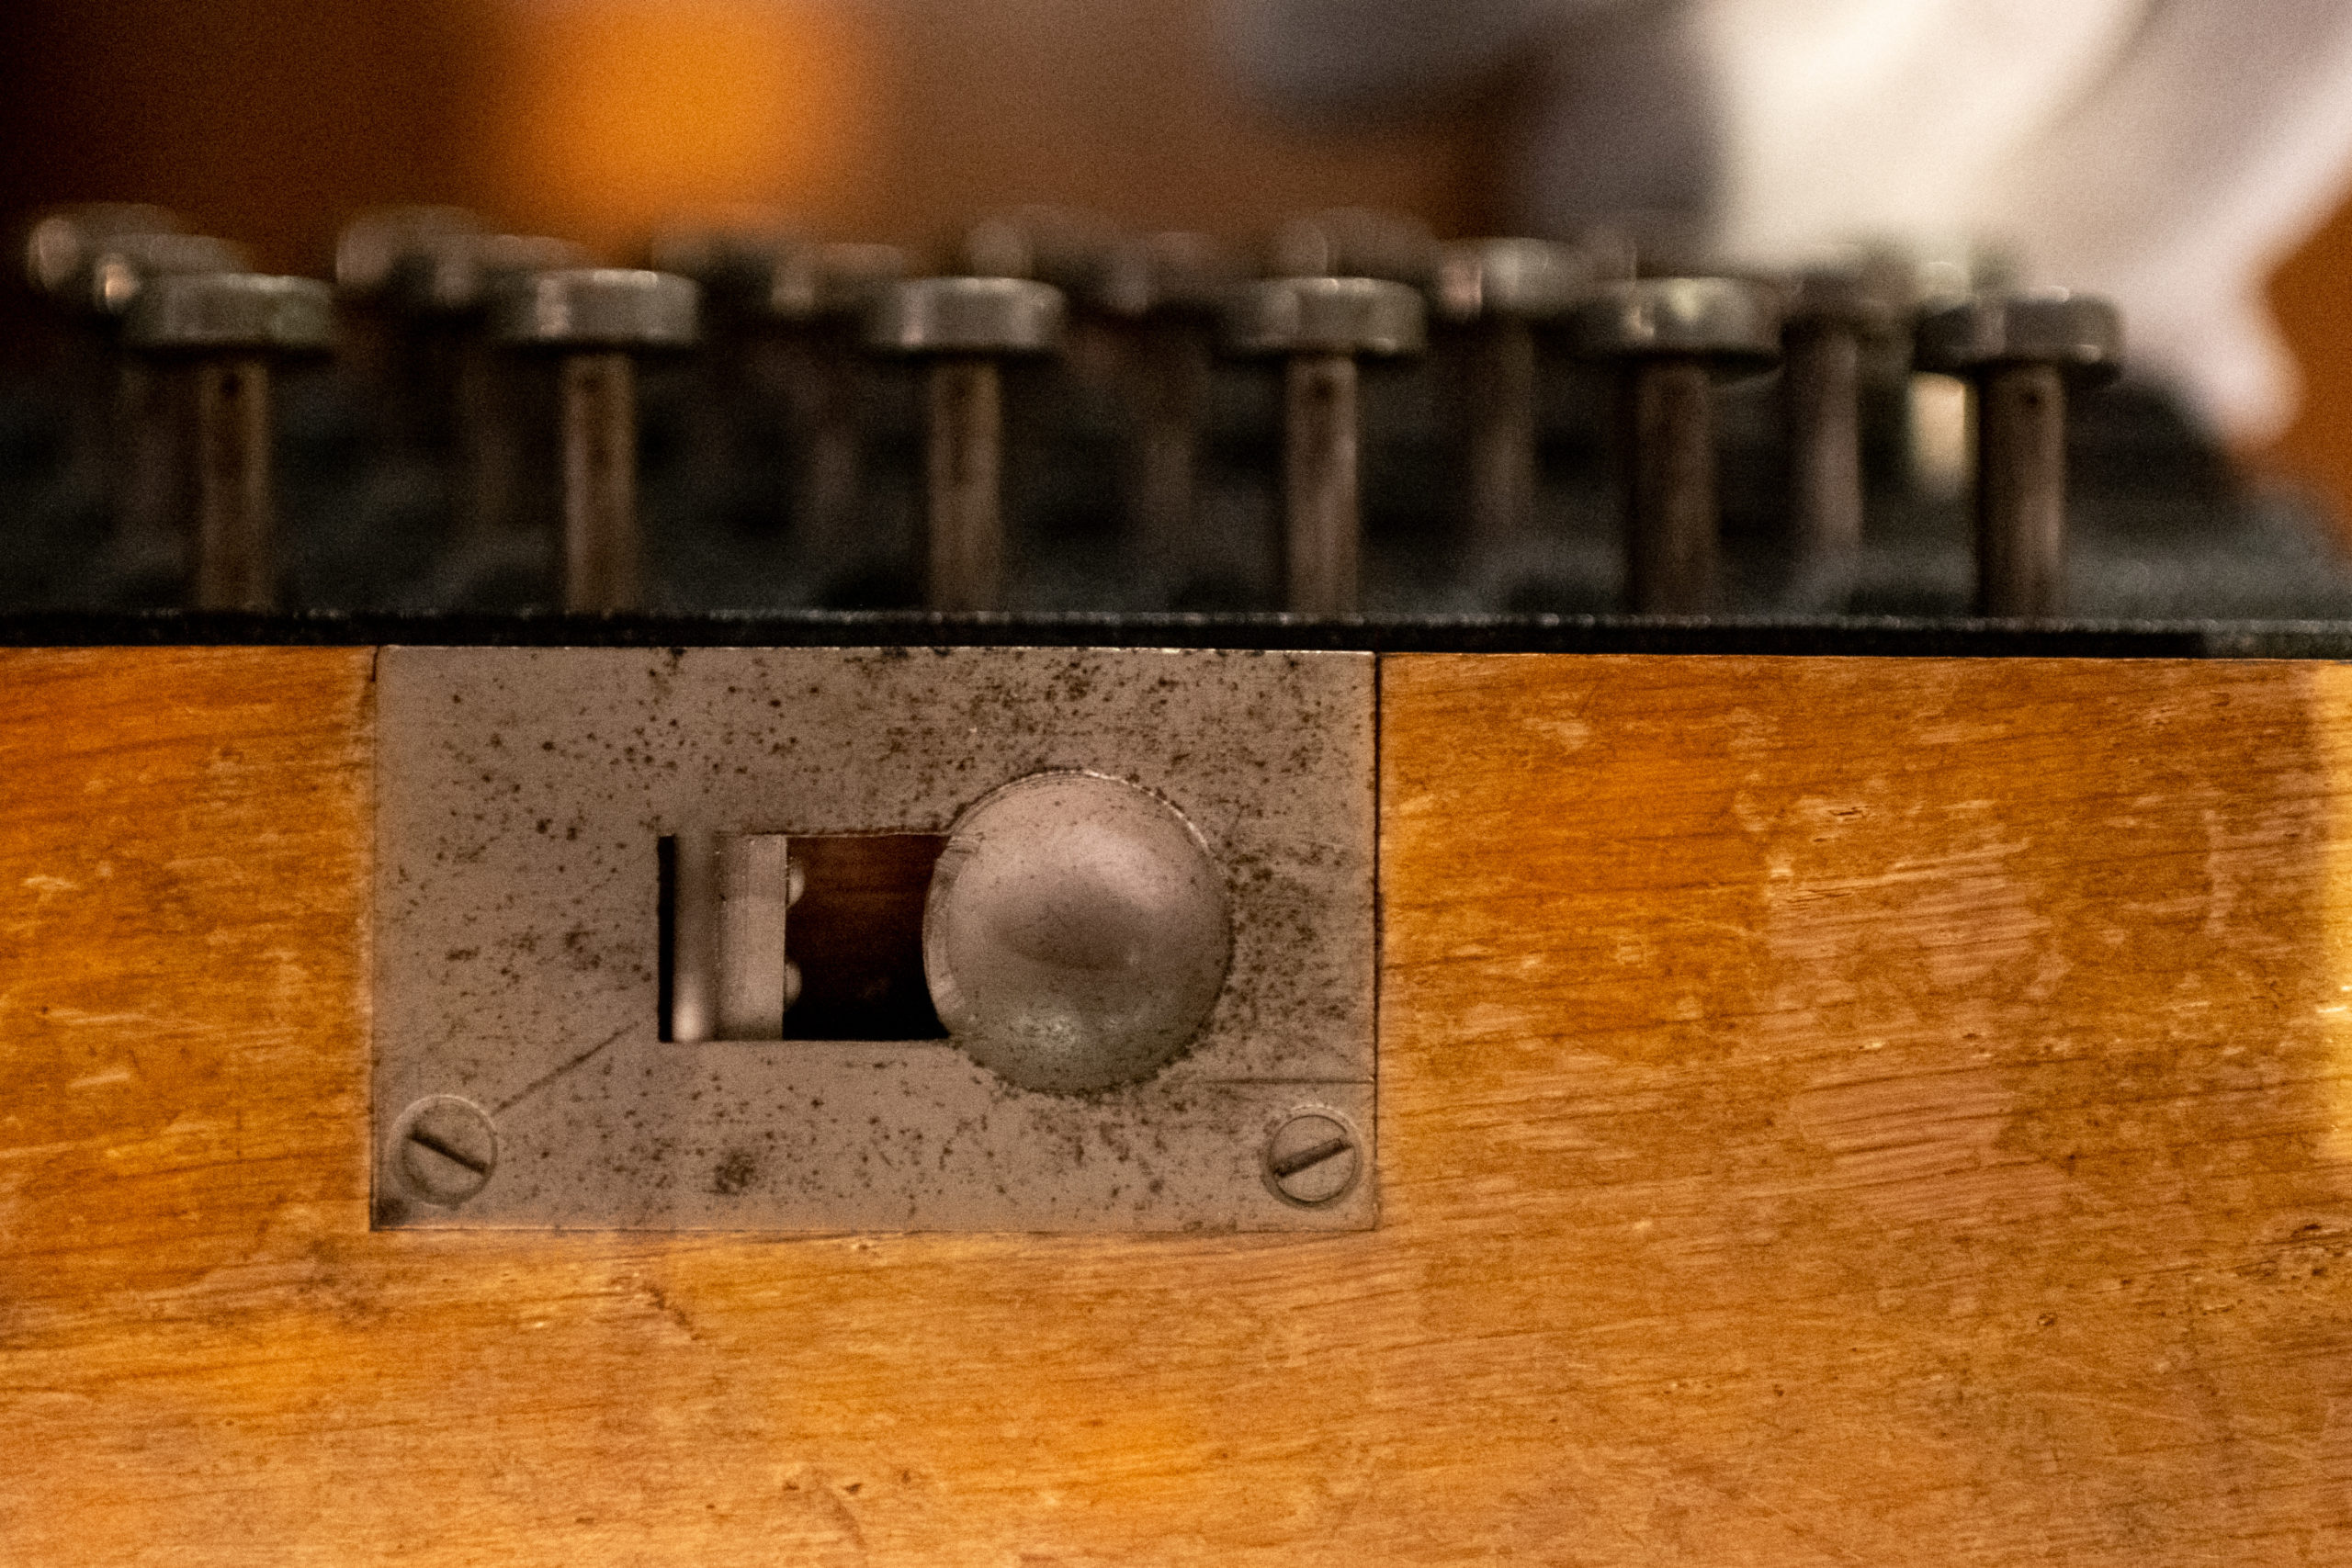 boczny widok na przyciski klawiaturymaszyny Enigma..